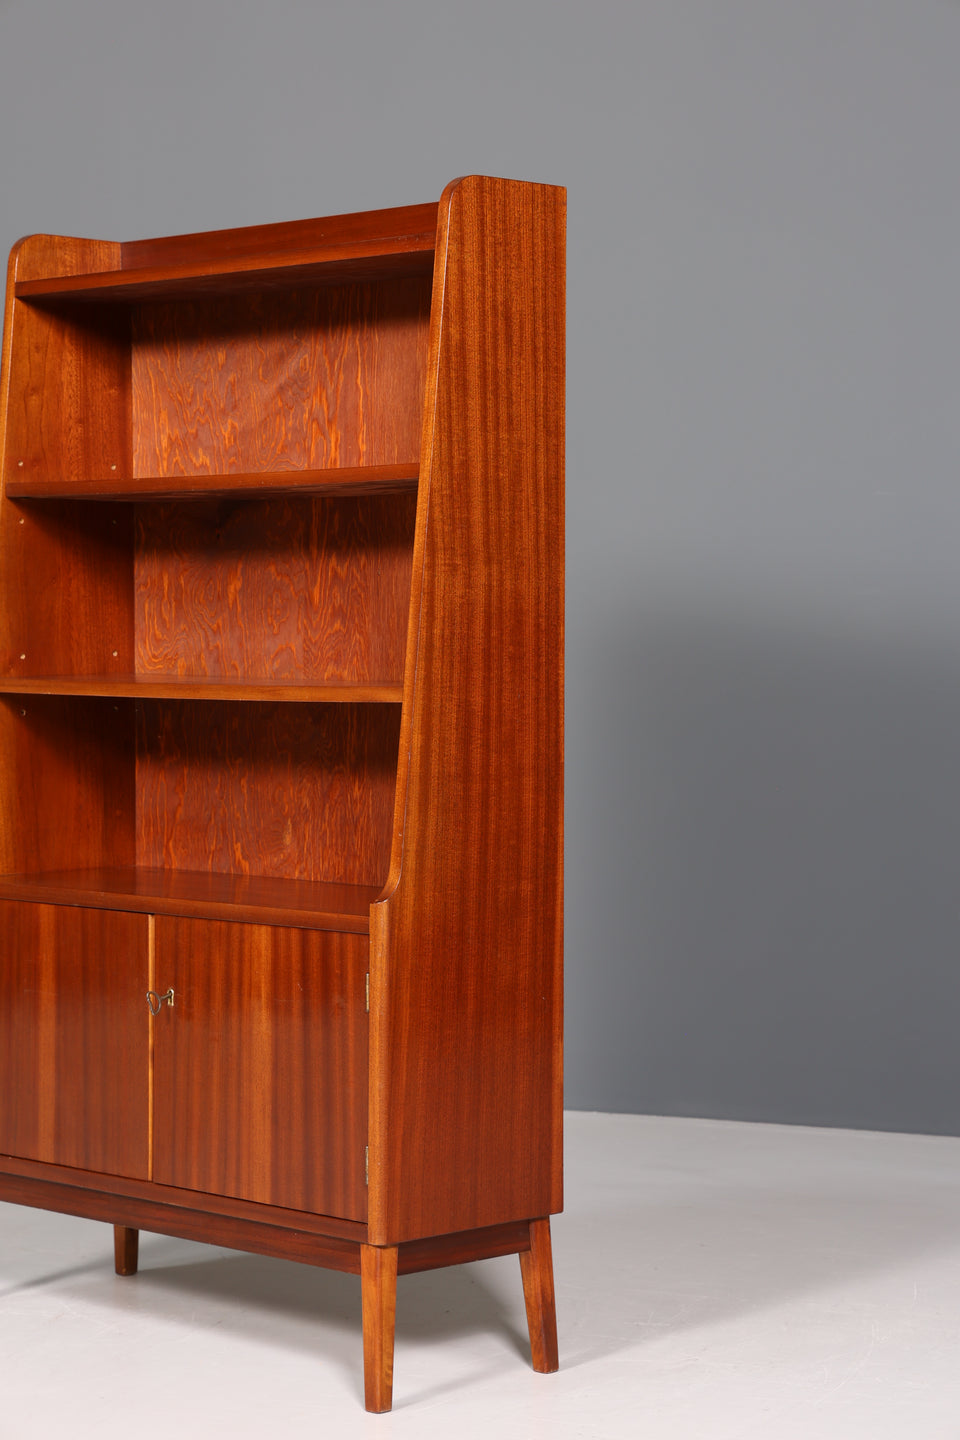 Wunderschöner Mid Century Schrank Bücherregal Vintage Highboard Retro Holz Regal 60er Jahre